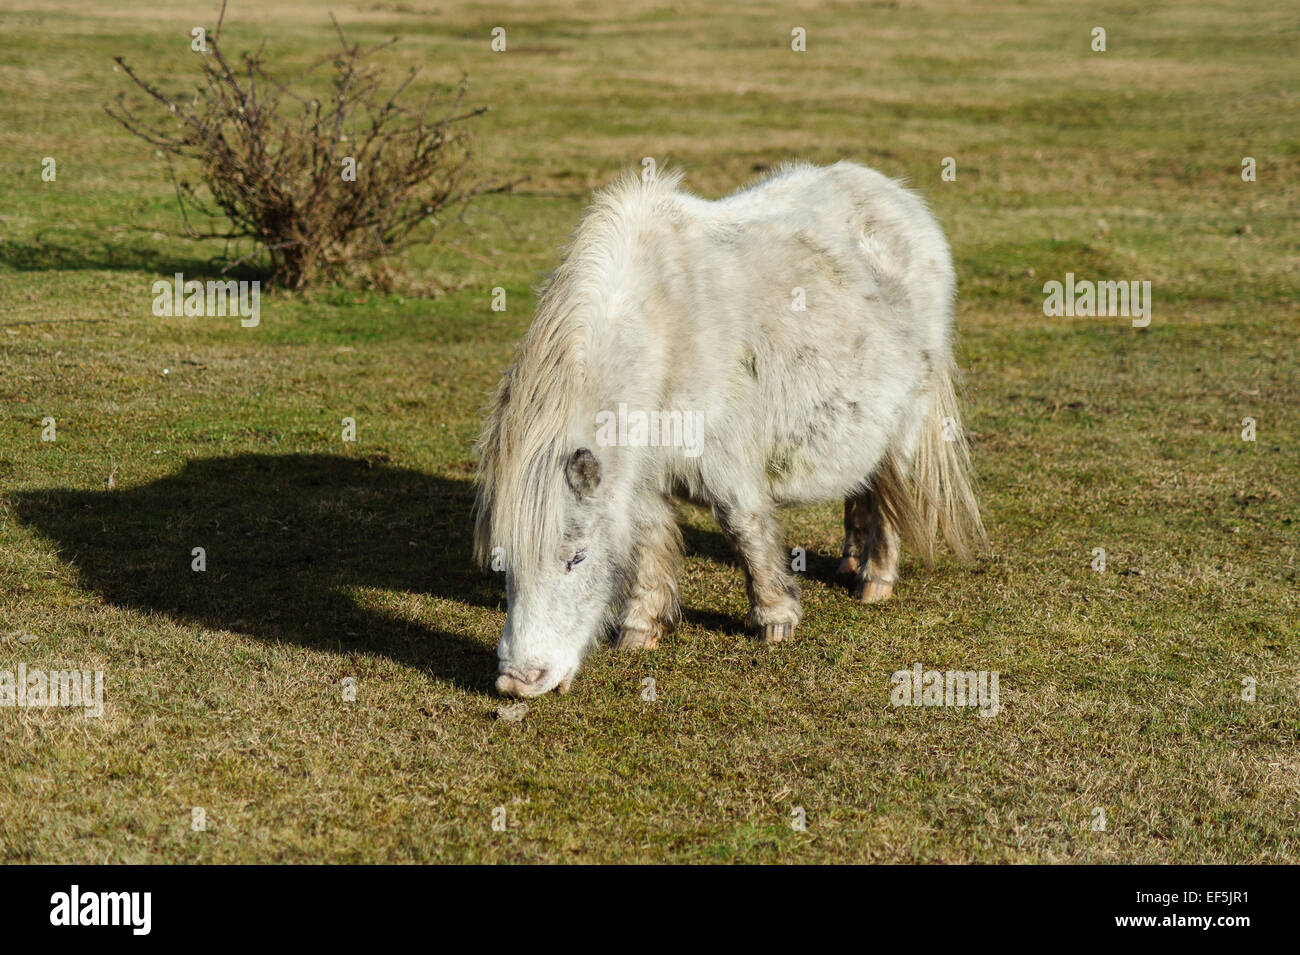 Das New Forest Pony ist eines der anerkannten Berg und Moor oder native Pony Rassen der britischen Inseln. Stockfoto